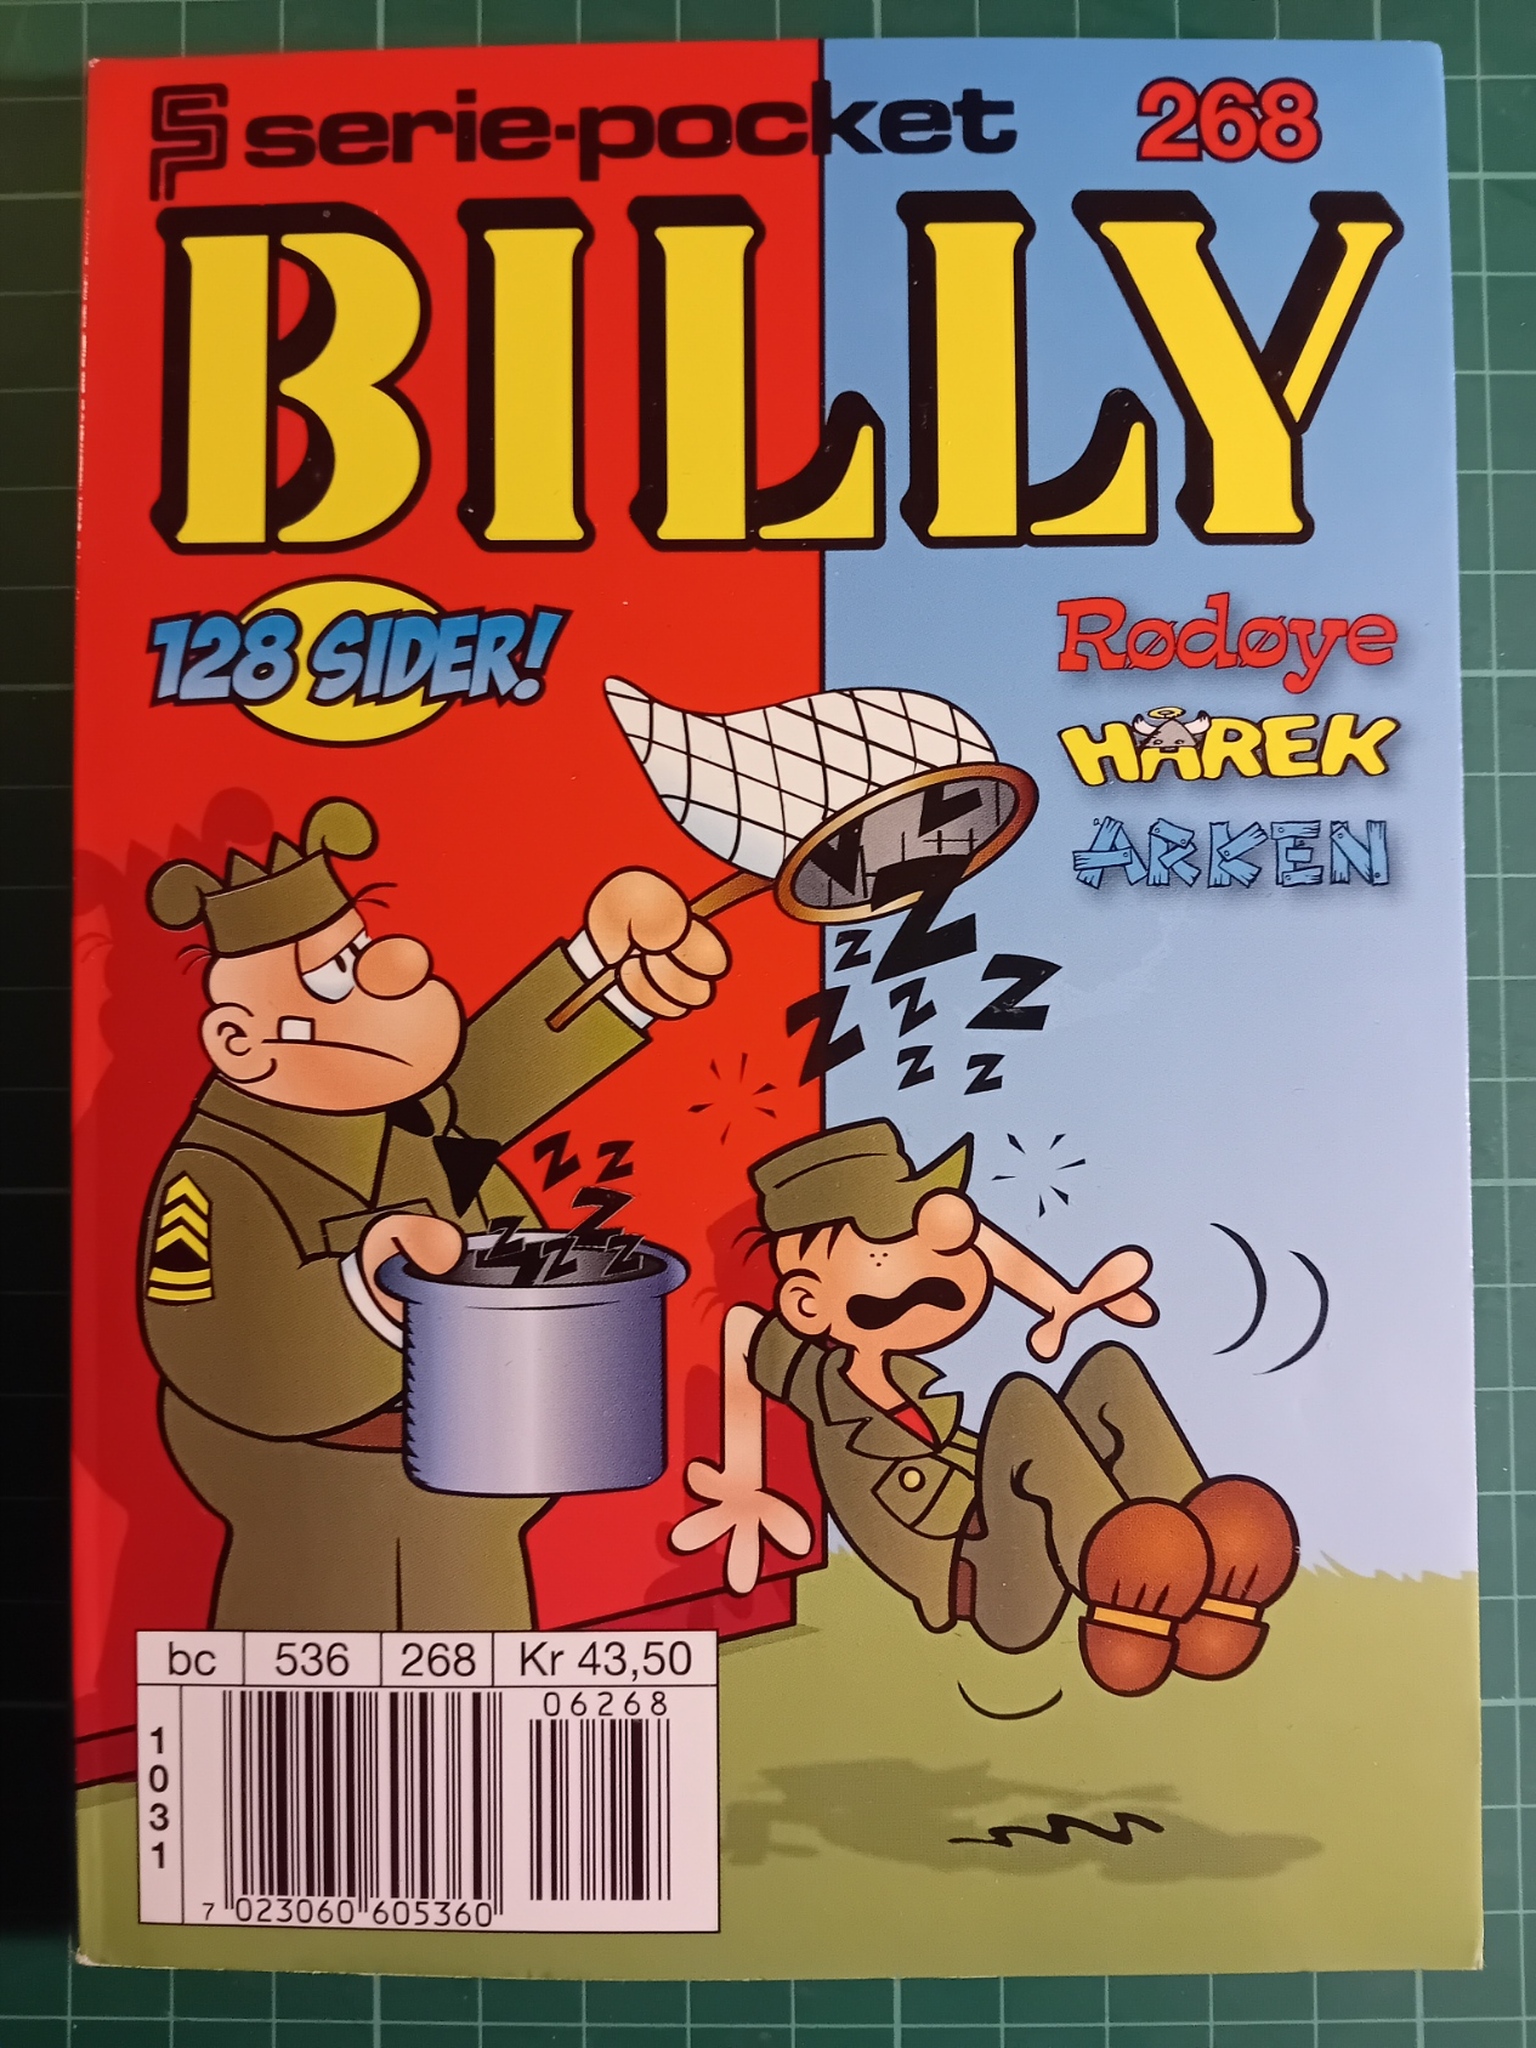 Serie-pocket 268 : Billy